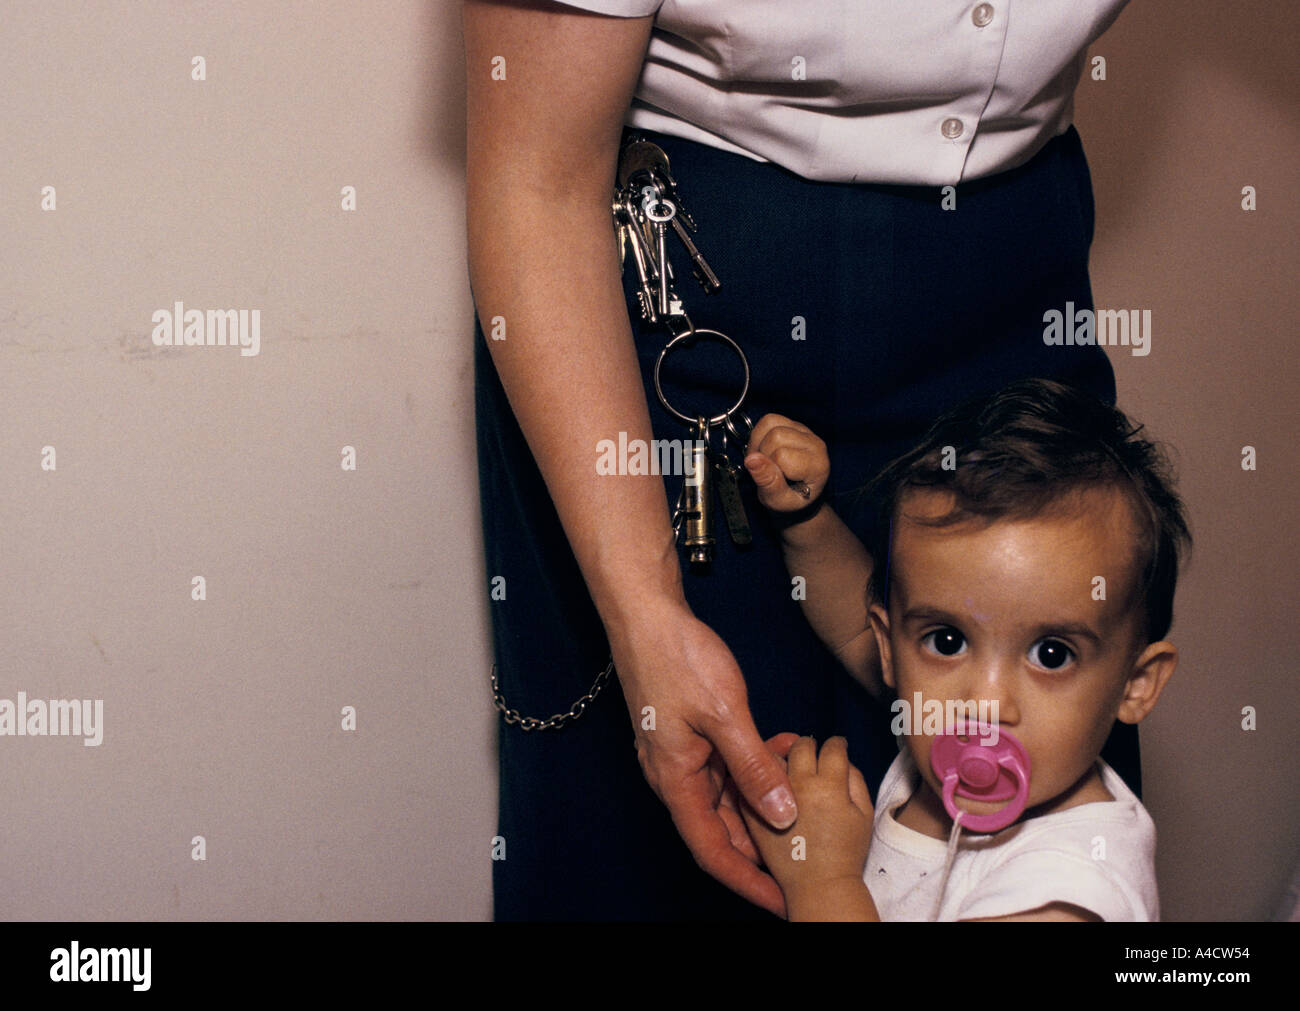 Le bébé d'un prisonnier joue avec les touches d'un gardien de prison. Banque D'Images